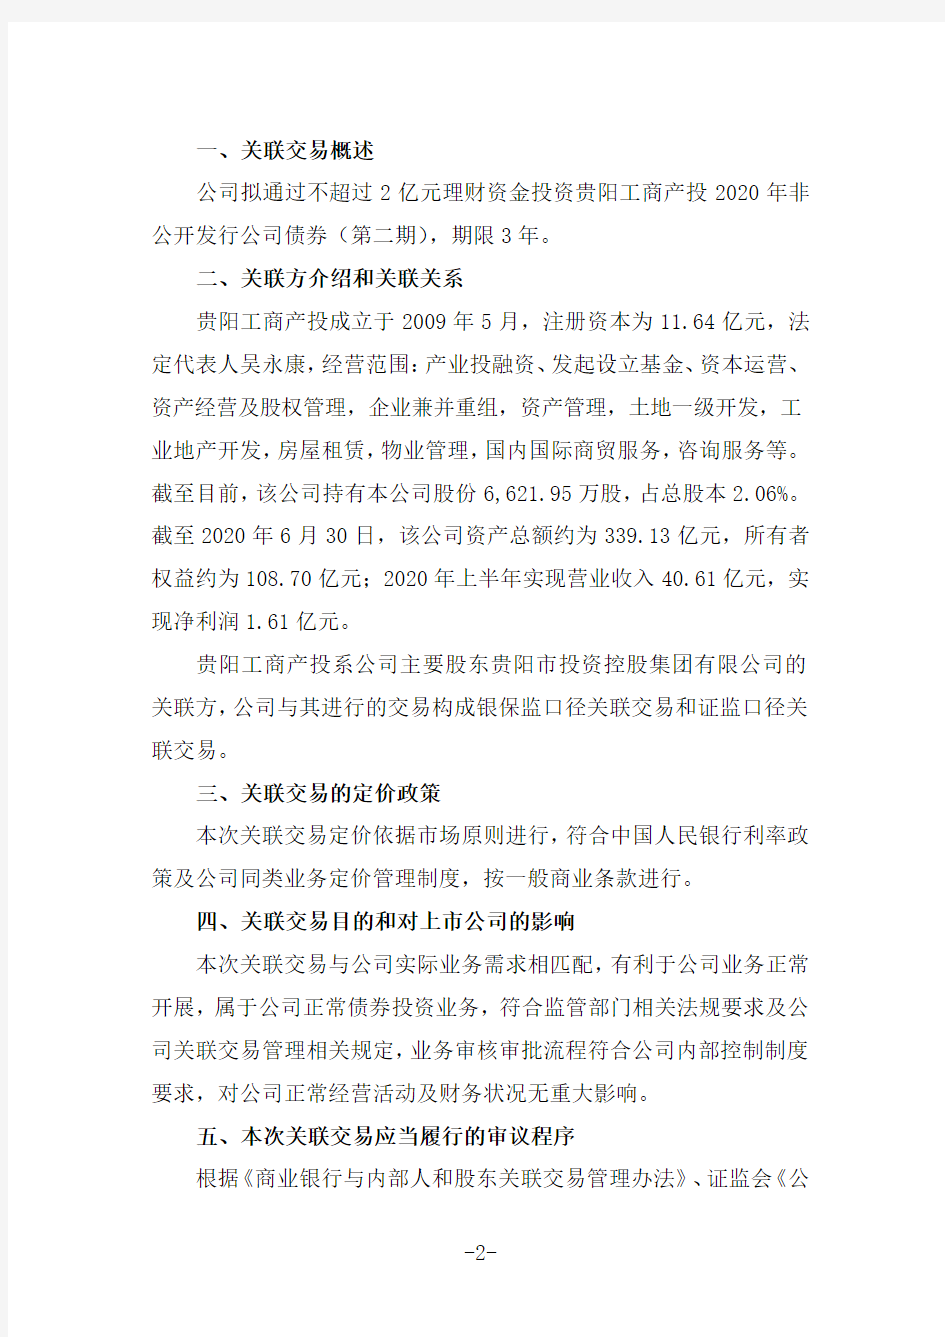 601997贵阳银行股份有限公司关联交易事项的公告2020-11-18